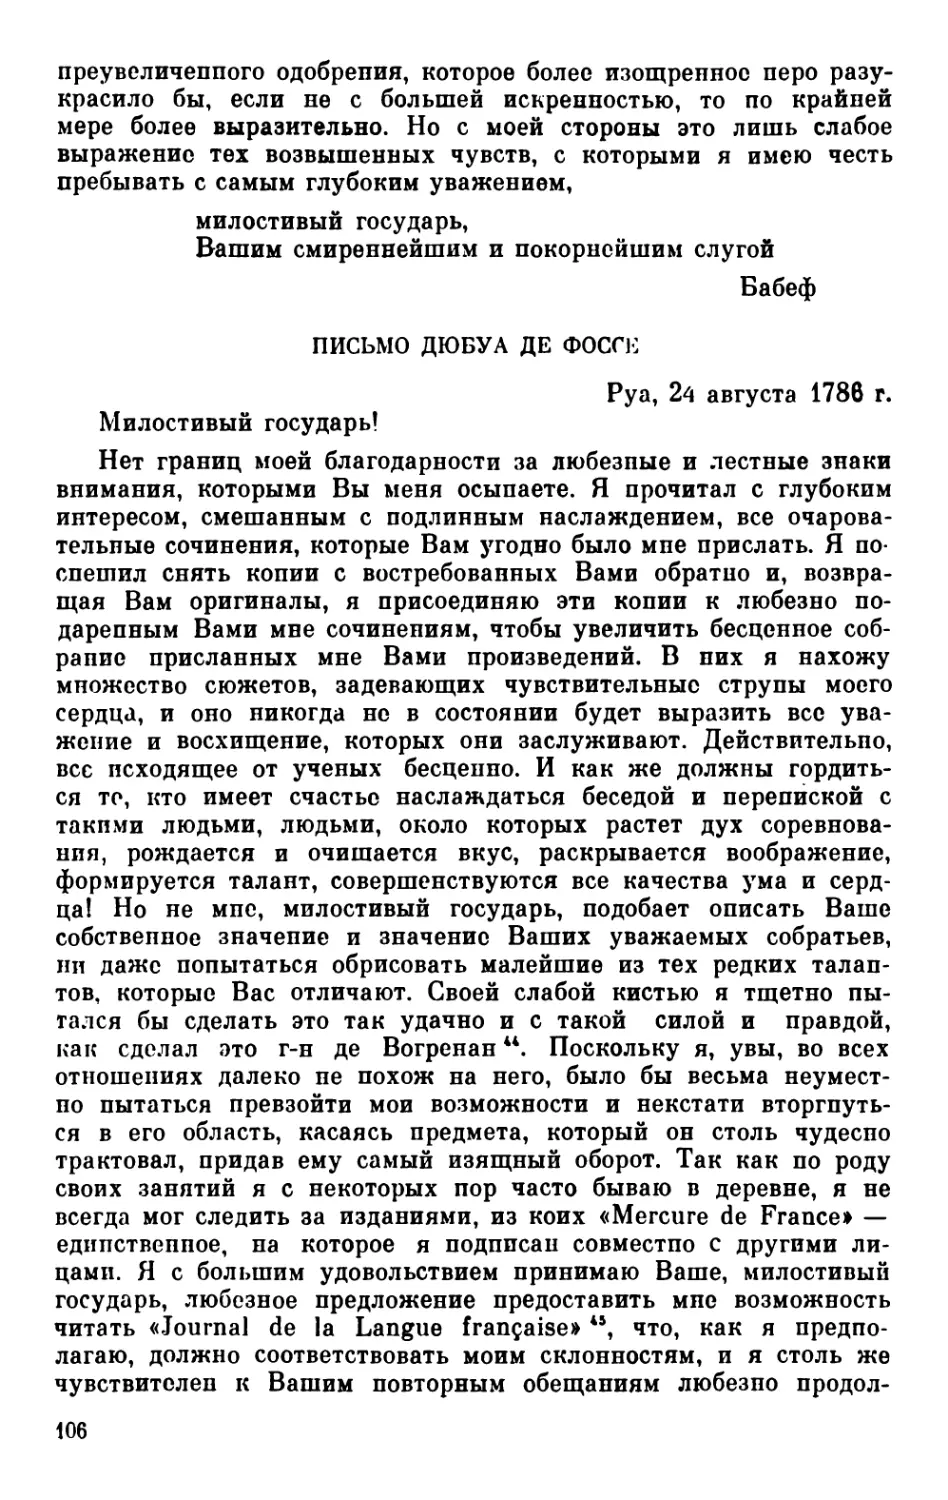 Письмо Дюбуа де Фоссе. Руа, 24 августа 1786 г.